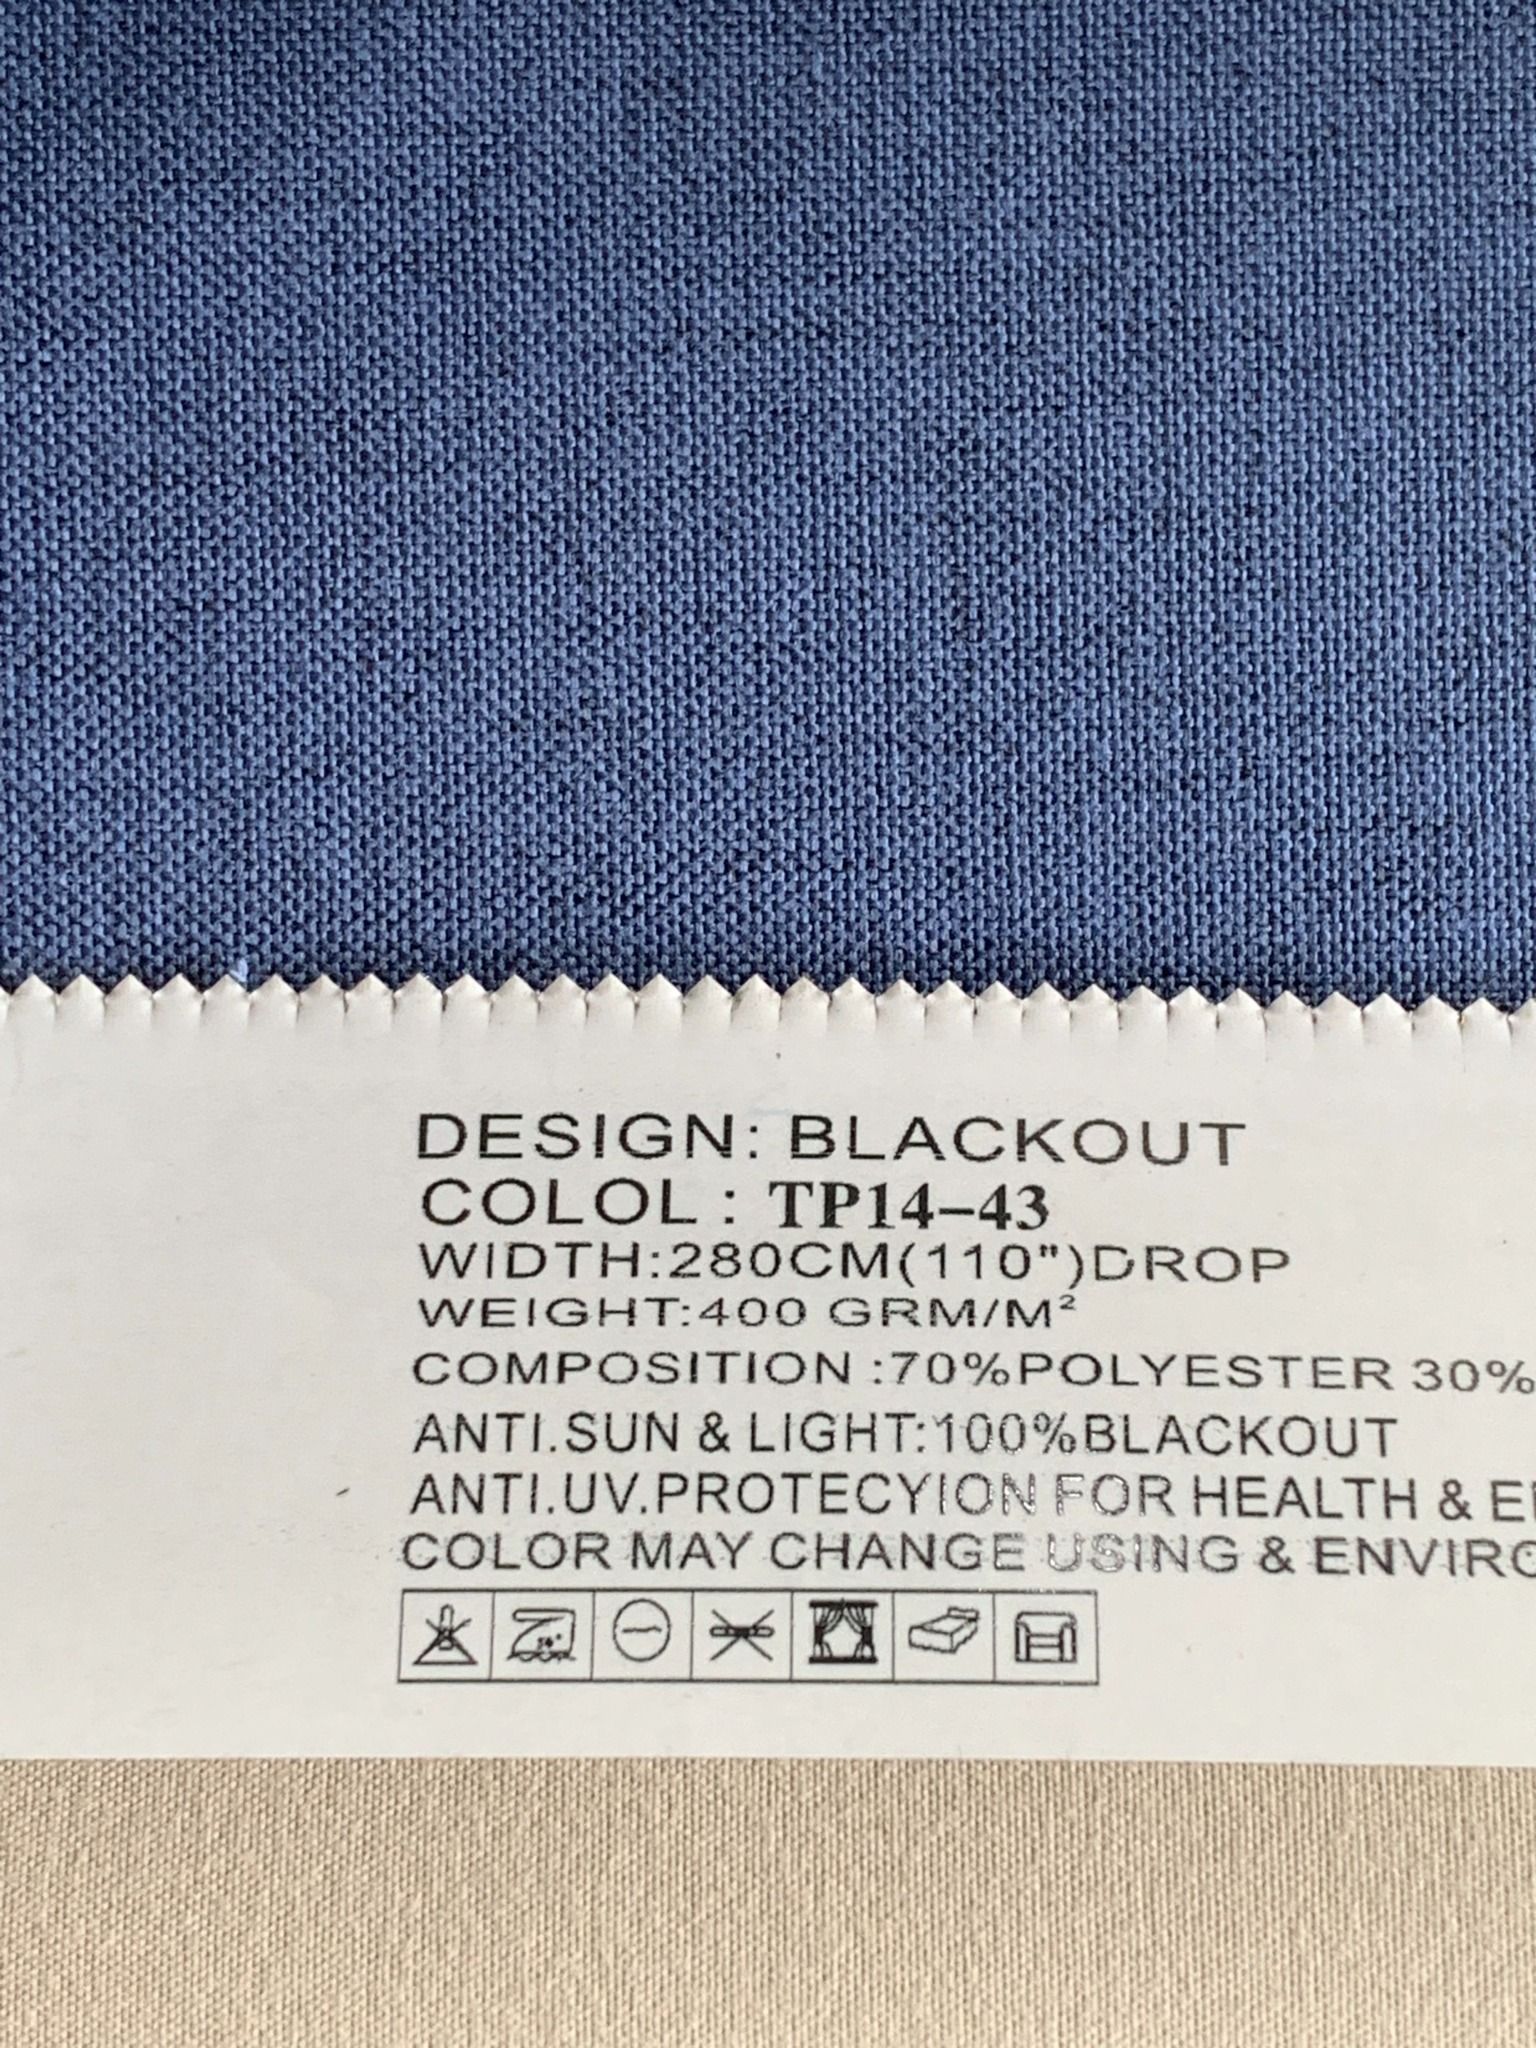  Vải Rèm cao cấp Khổ 280- Vải rèm cản sáng 100% - Gấm rèm BMT 